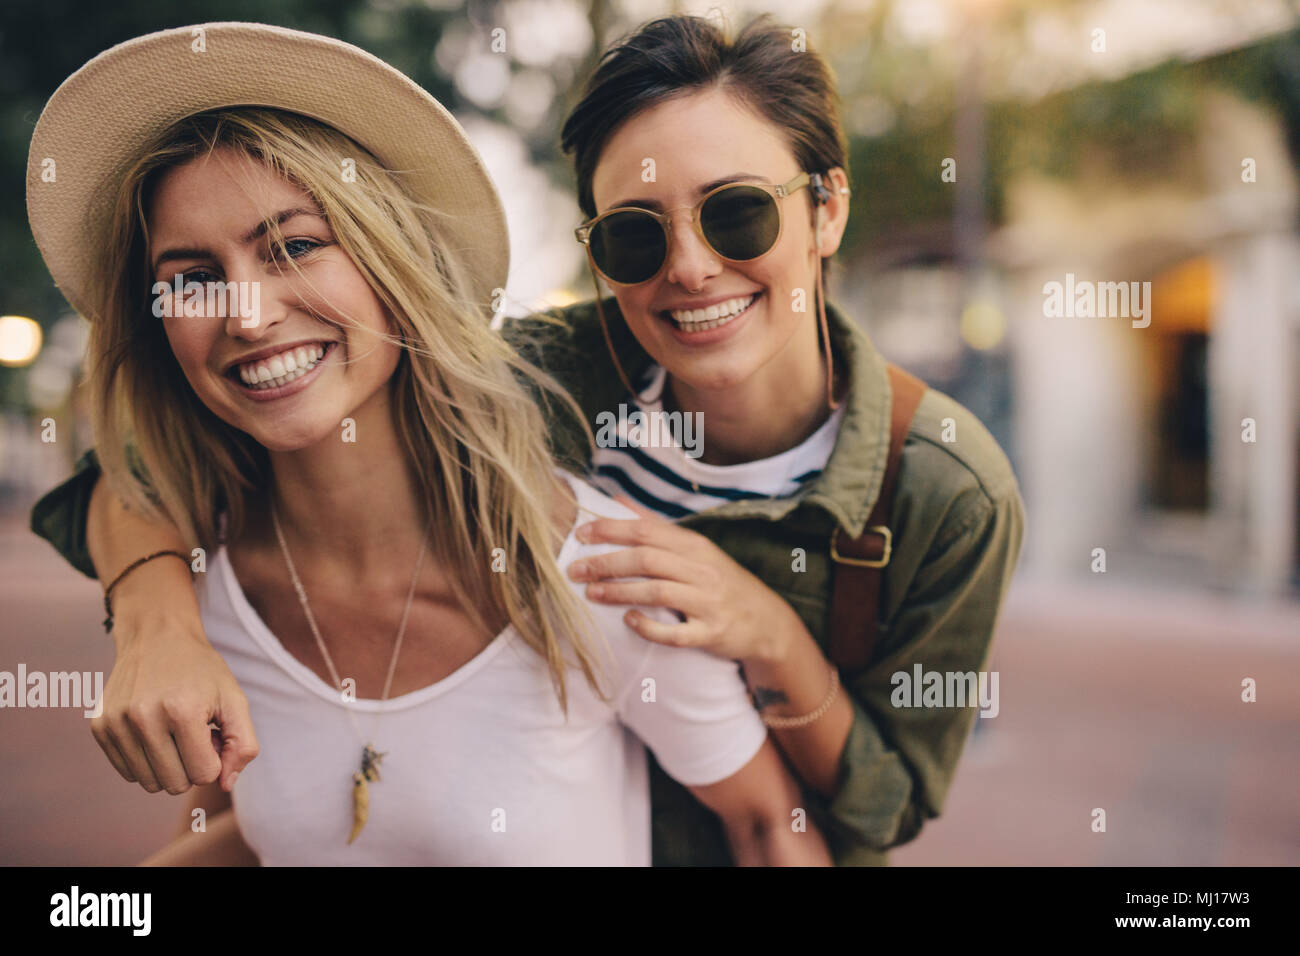 Portrait de belles jeunes femmes smiling together outdoors. Meilleurs amis profitant ainsi à l'extérieur. Banque D'Images